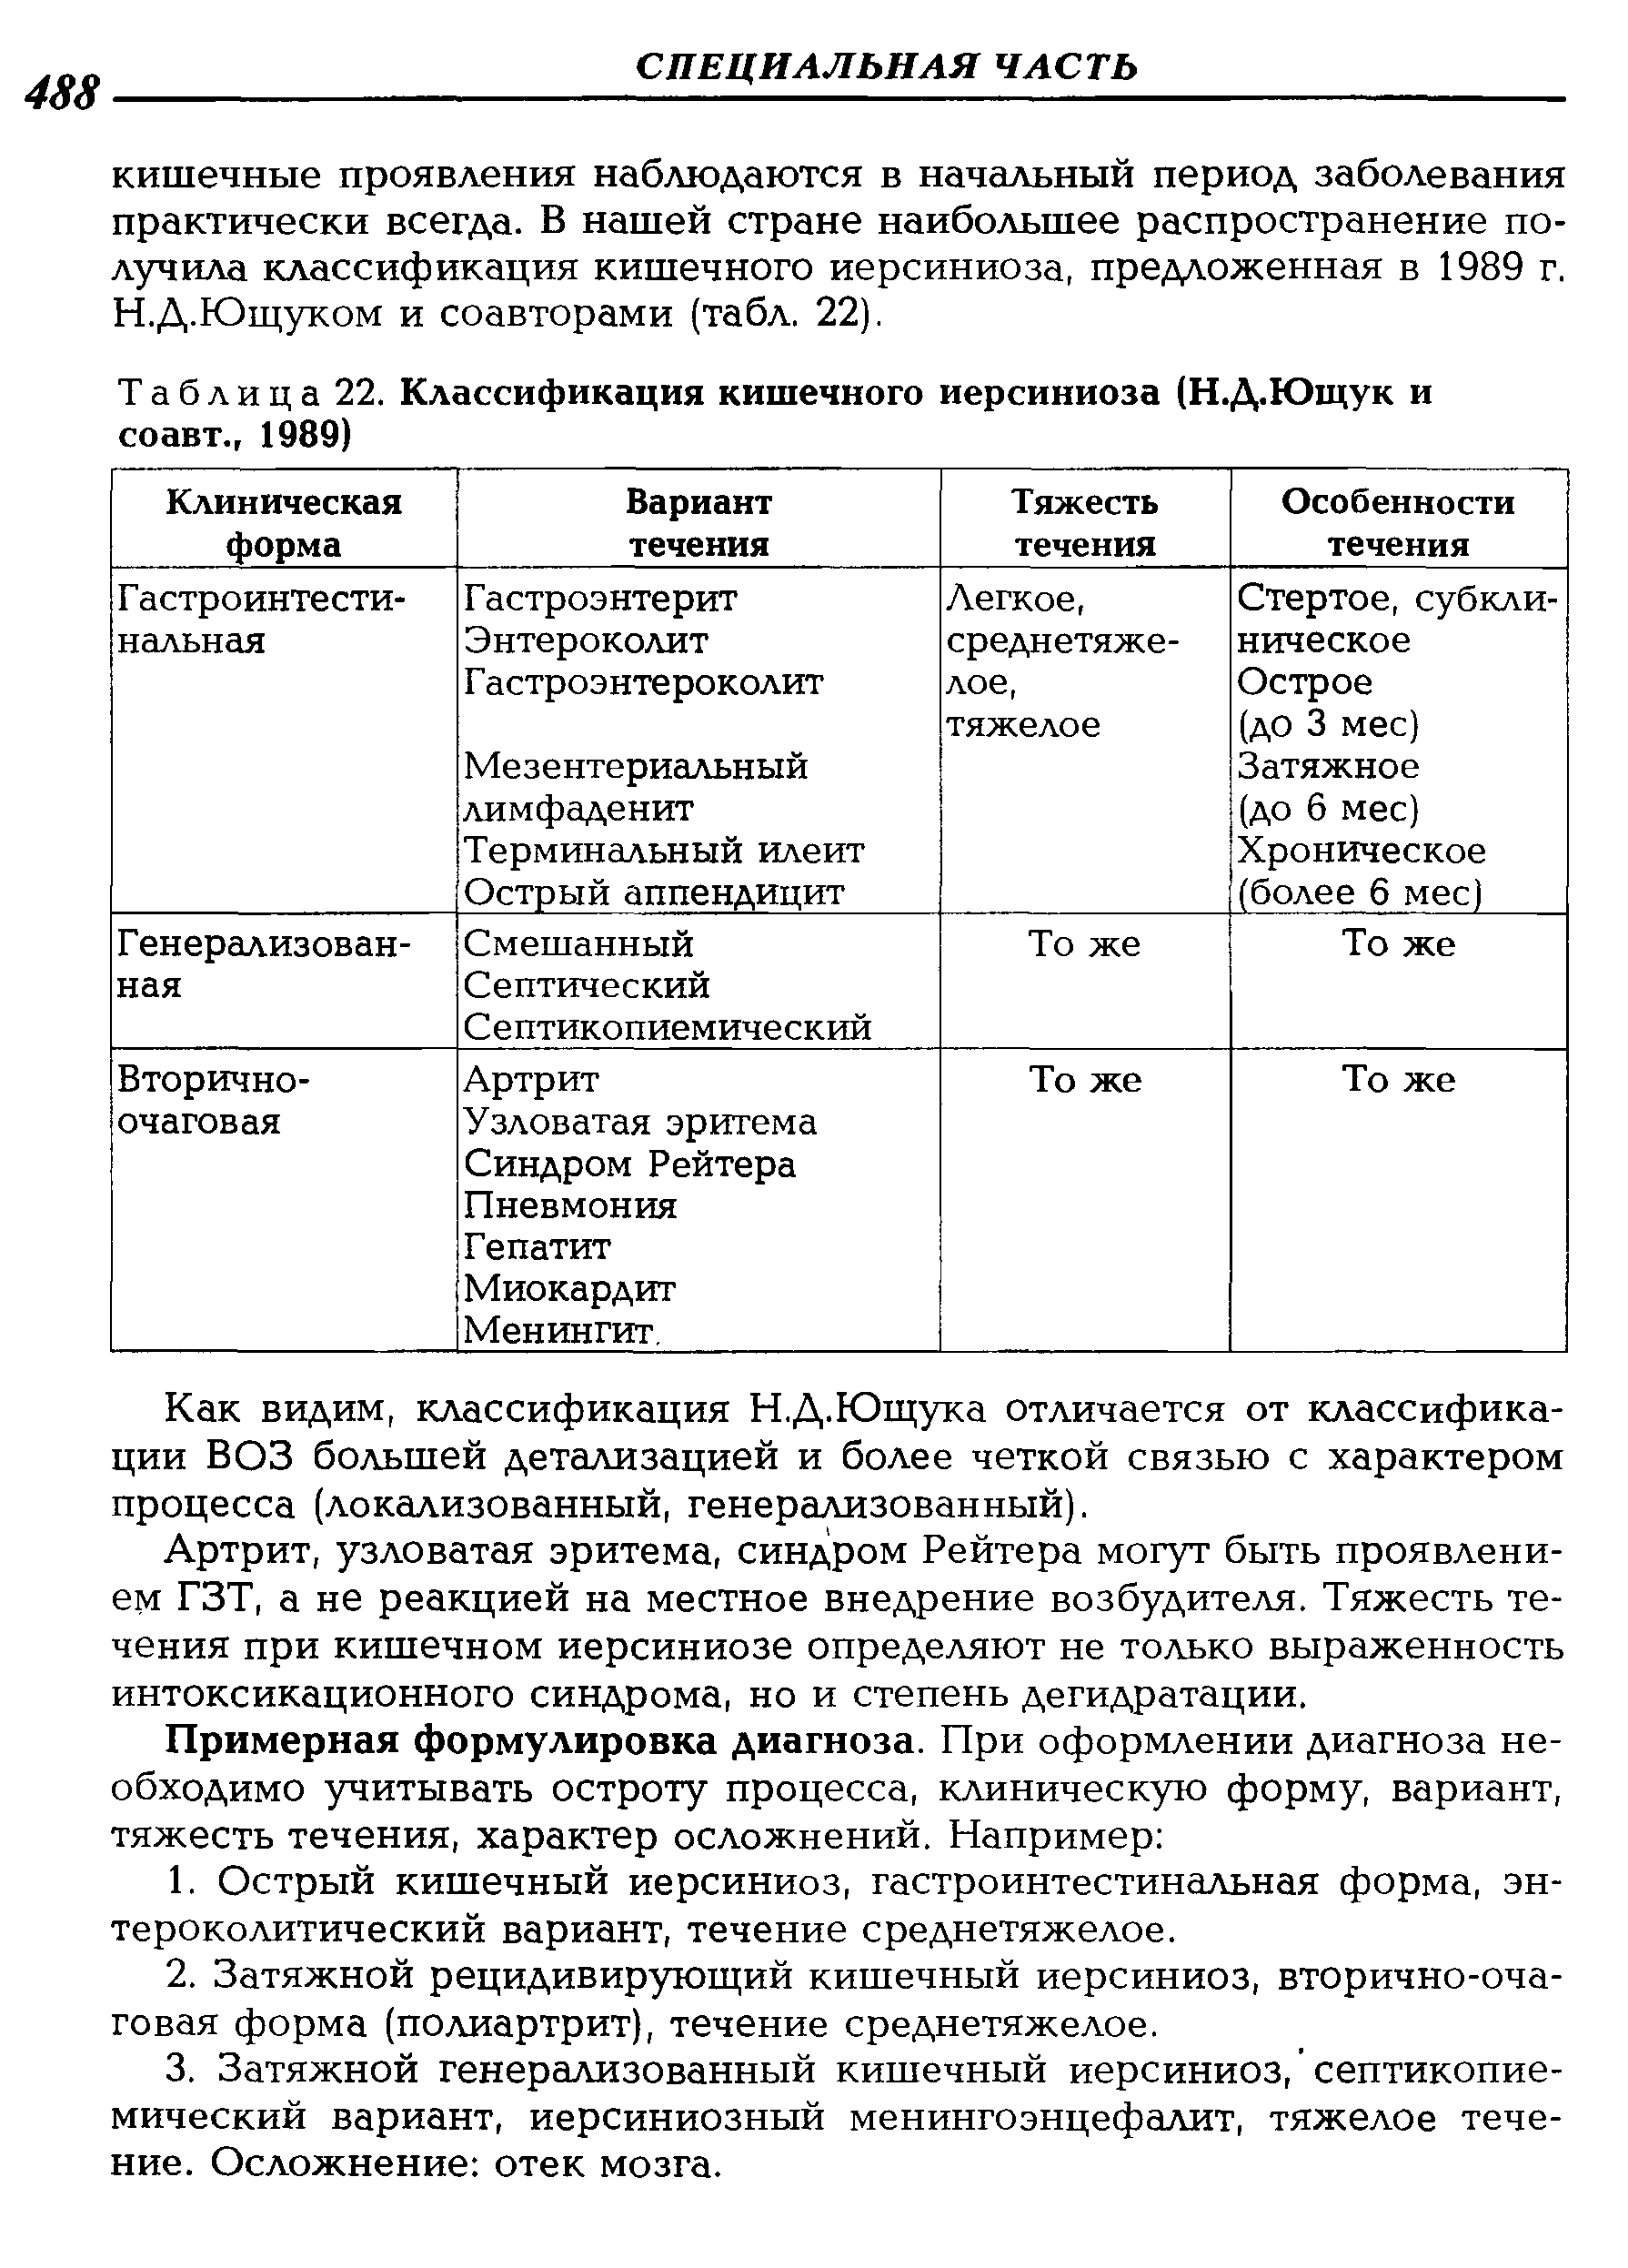 Таблица 22. Классификация кишечного иерсиниоза (Н.Д.Ющук и соавт., 1989)...